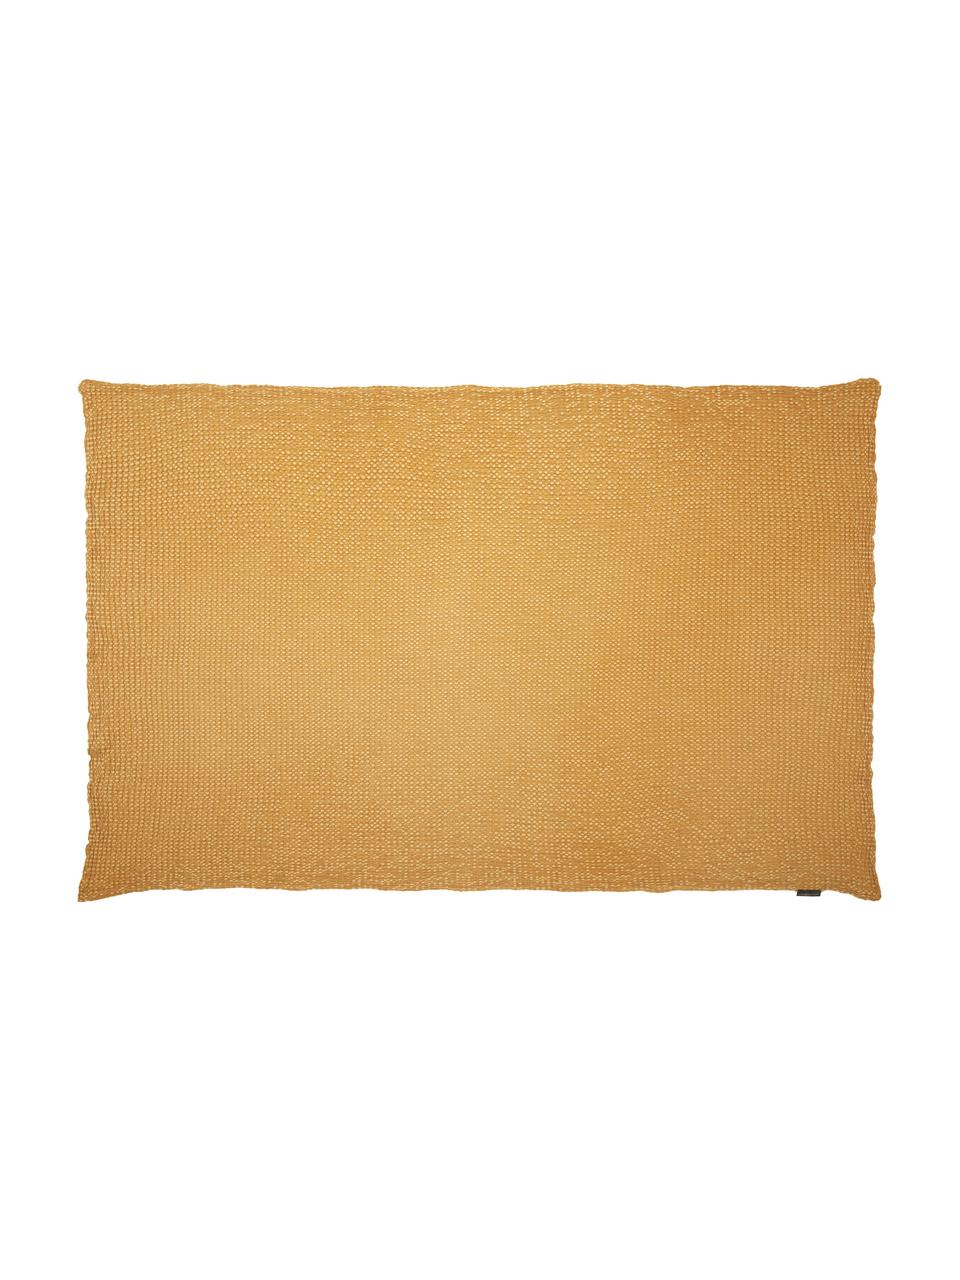 Baumwoll-Plaid Vigo in Goldgelb mit strukturierter Oberfläche, 100% Baumwolle, Goldgelb, 140 x 200 cm